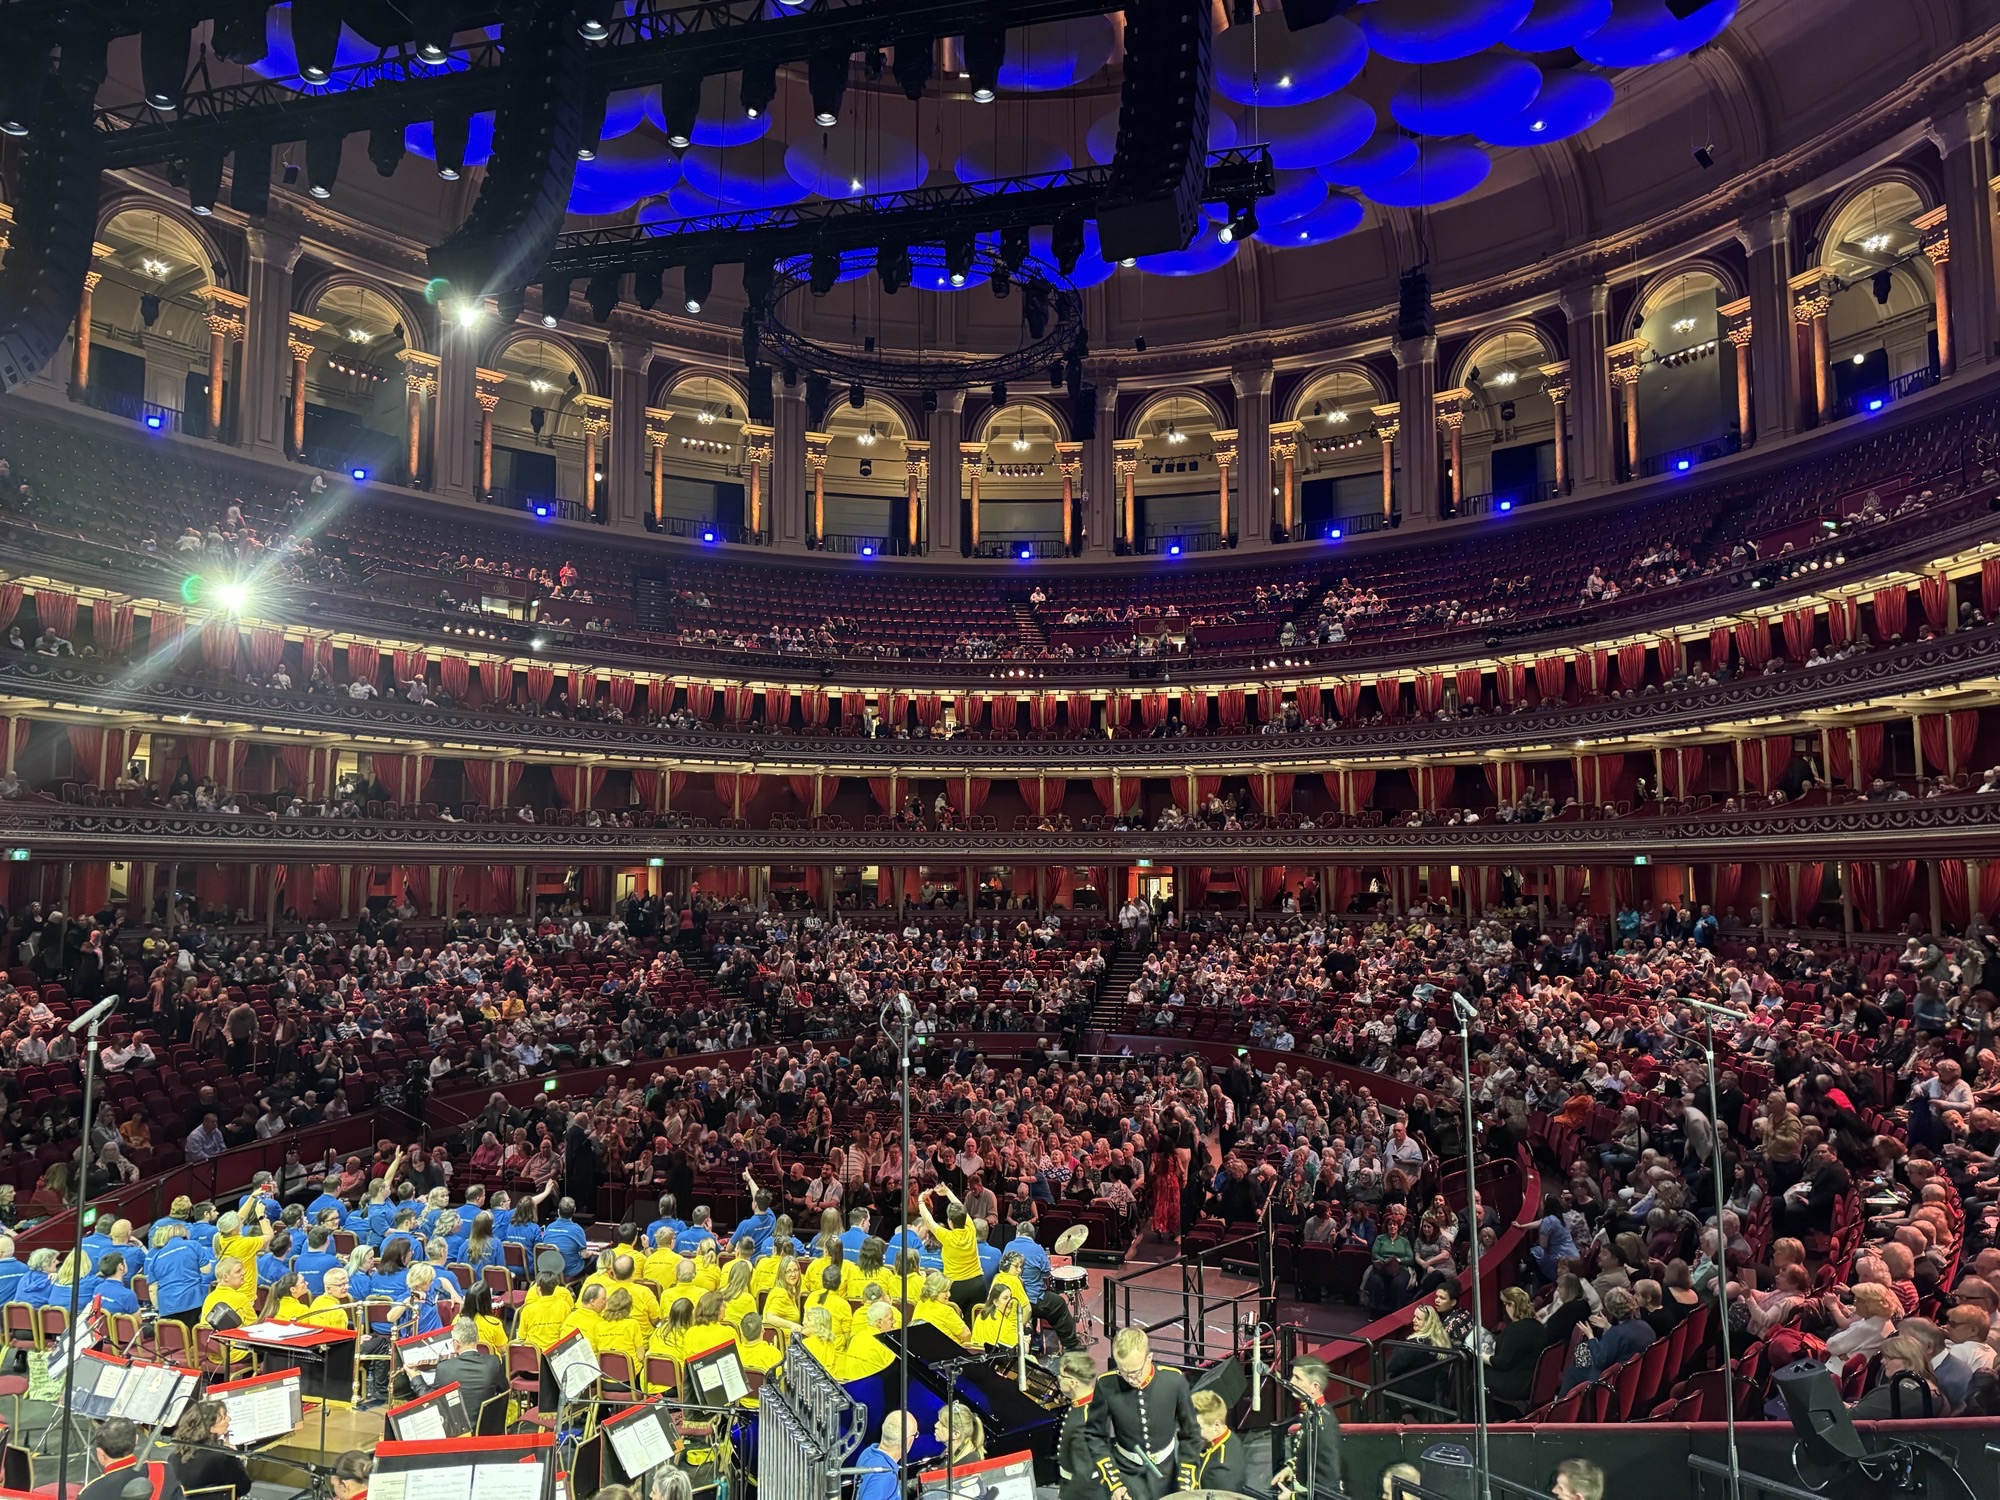 Crowd at Royal Albert Hall